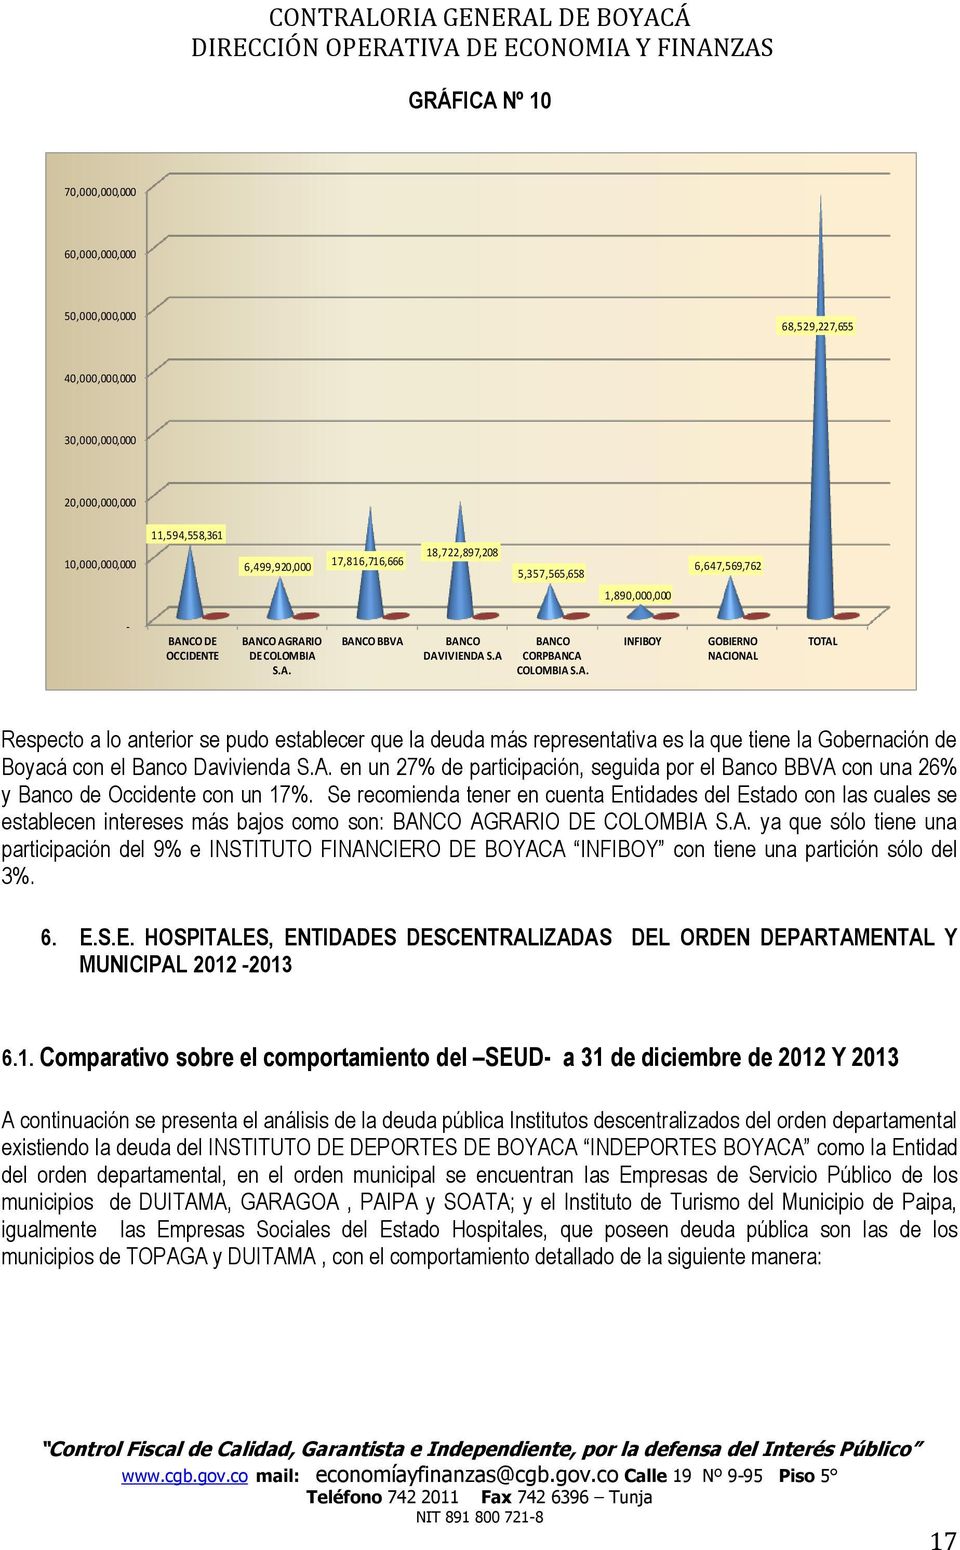 CO DE OCCIDENTE BANCO AGRARIO DE COLOMBIA S.A. BANCO BBVA BANCO DAVIVIENDA S.A BANCO CORPBANCA COLOMBIA S.A. INFIBOY GOBIERNO NACIONAL TOTAL Respecto a lo anterior se pudo establecer que la deuda más representativa es la que tiene la Gobernación de Boyacá con el Banco Davivienda S.